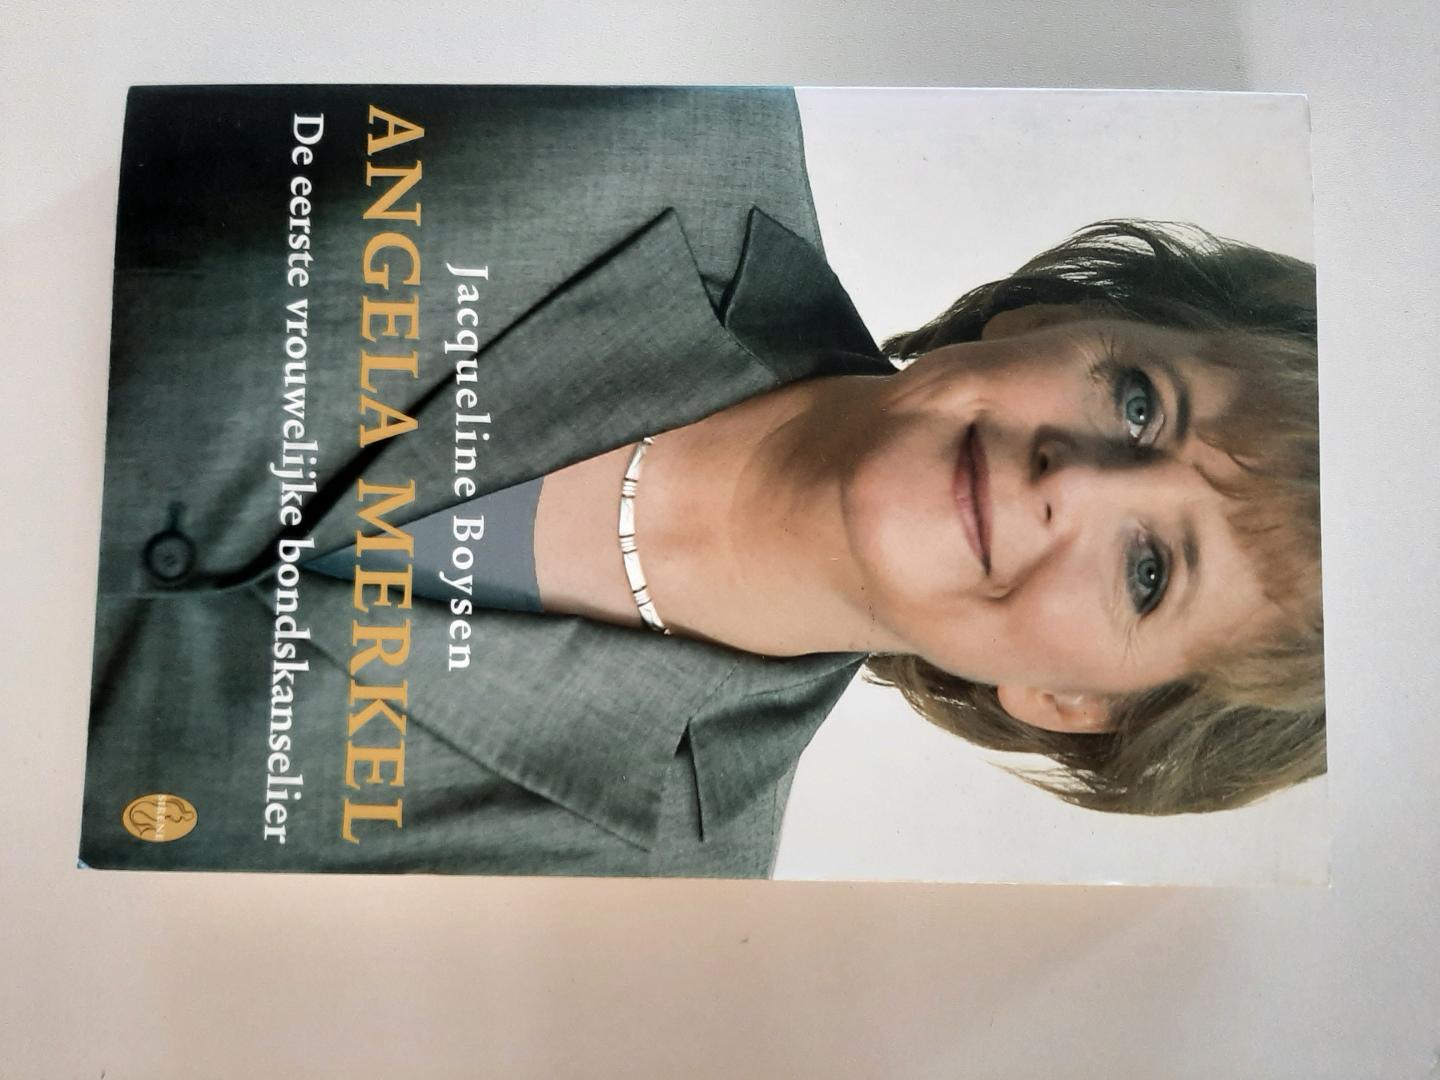 Boysen, Jacqueline - Angela Merkel. De eerste vrouwelijke bondskanselier